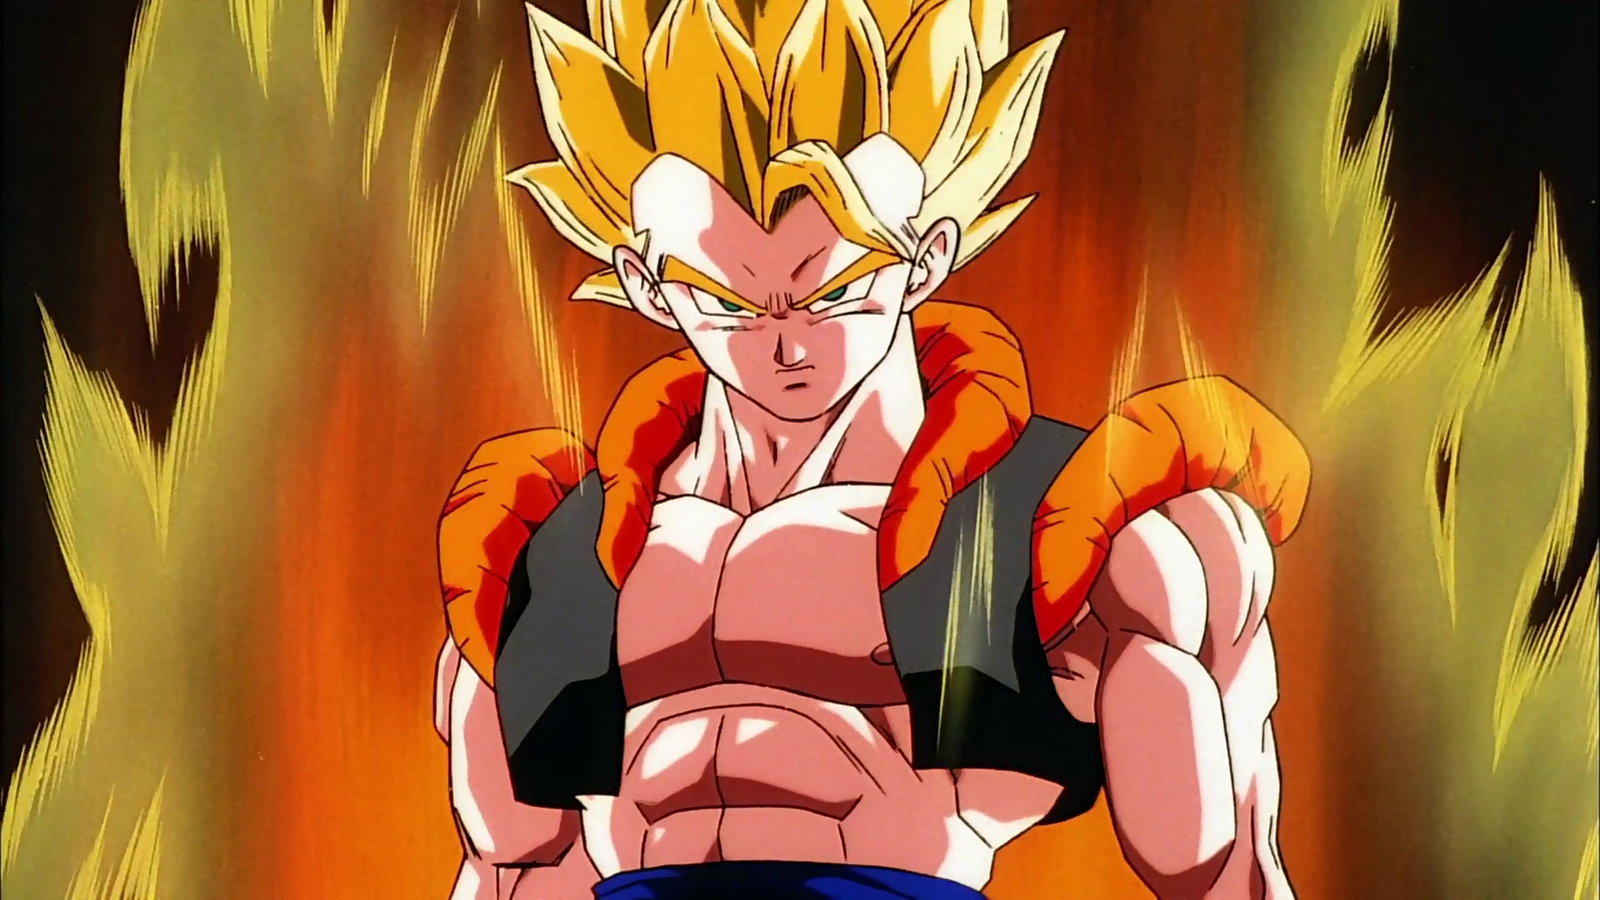 imagenes de goku fusionado con vegeta - Fusiones de Goku y Vegeta Goten y Trunks Taringa!